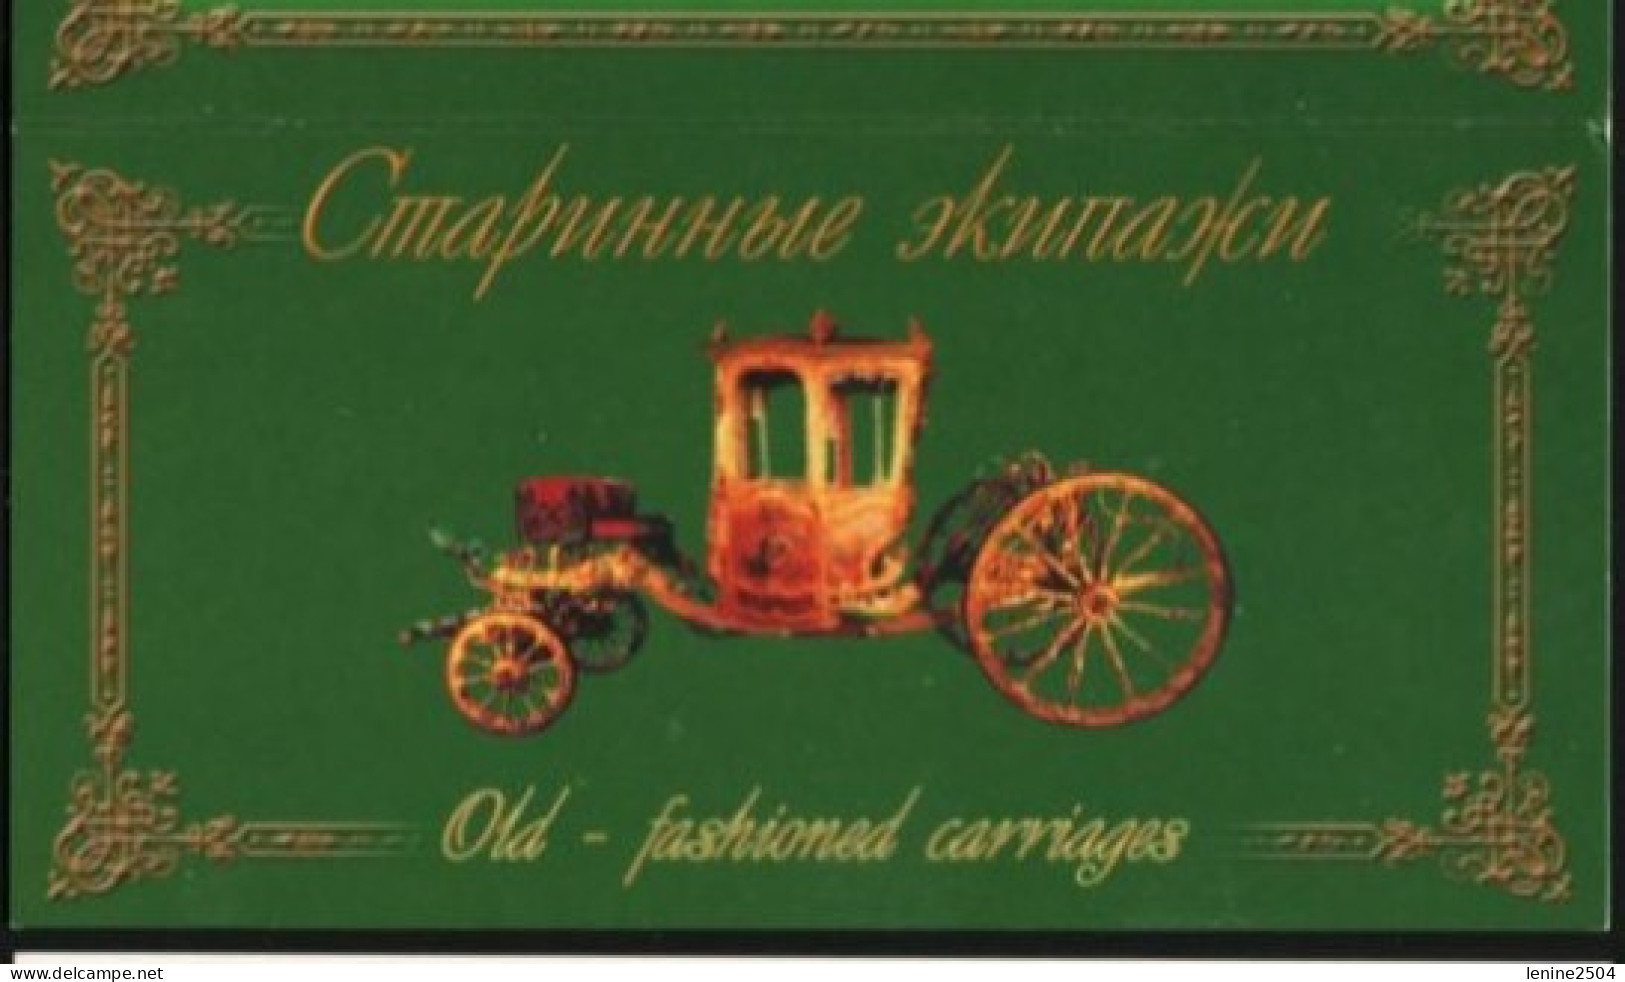 Russie 2002 Yvert N° 6645-6649 ** Carosses Emission 1er Jour Carnet Prestige Folder Booklet. Type I - Unused Stamps